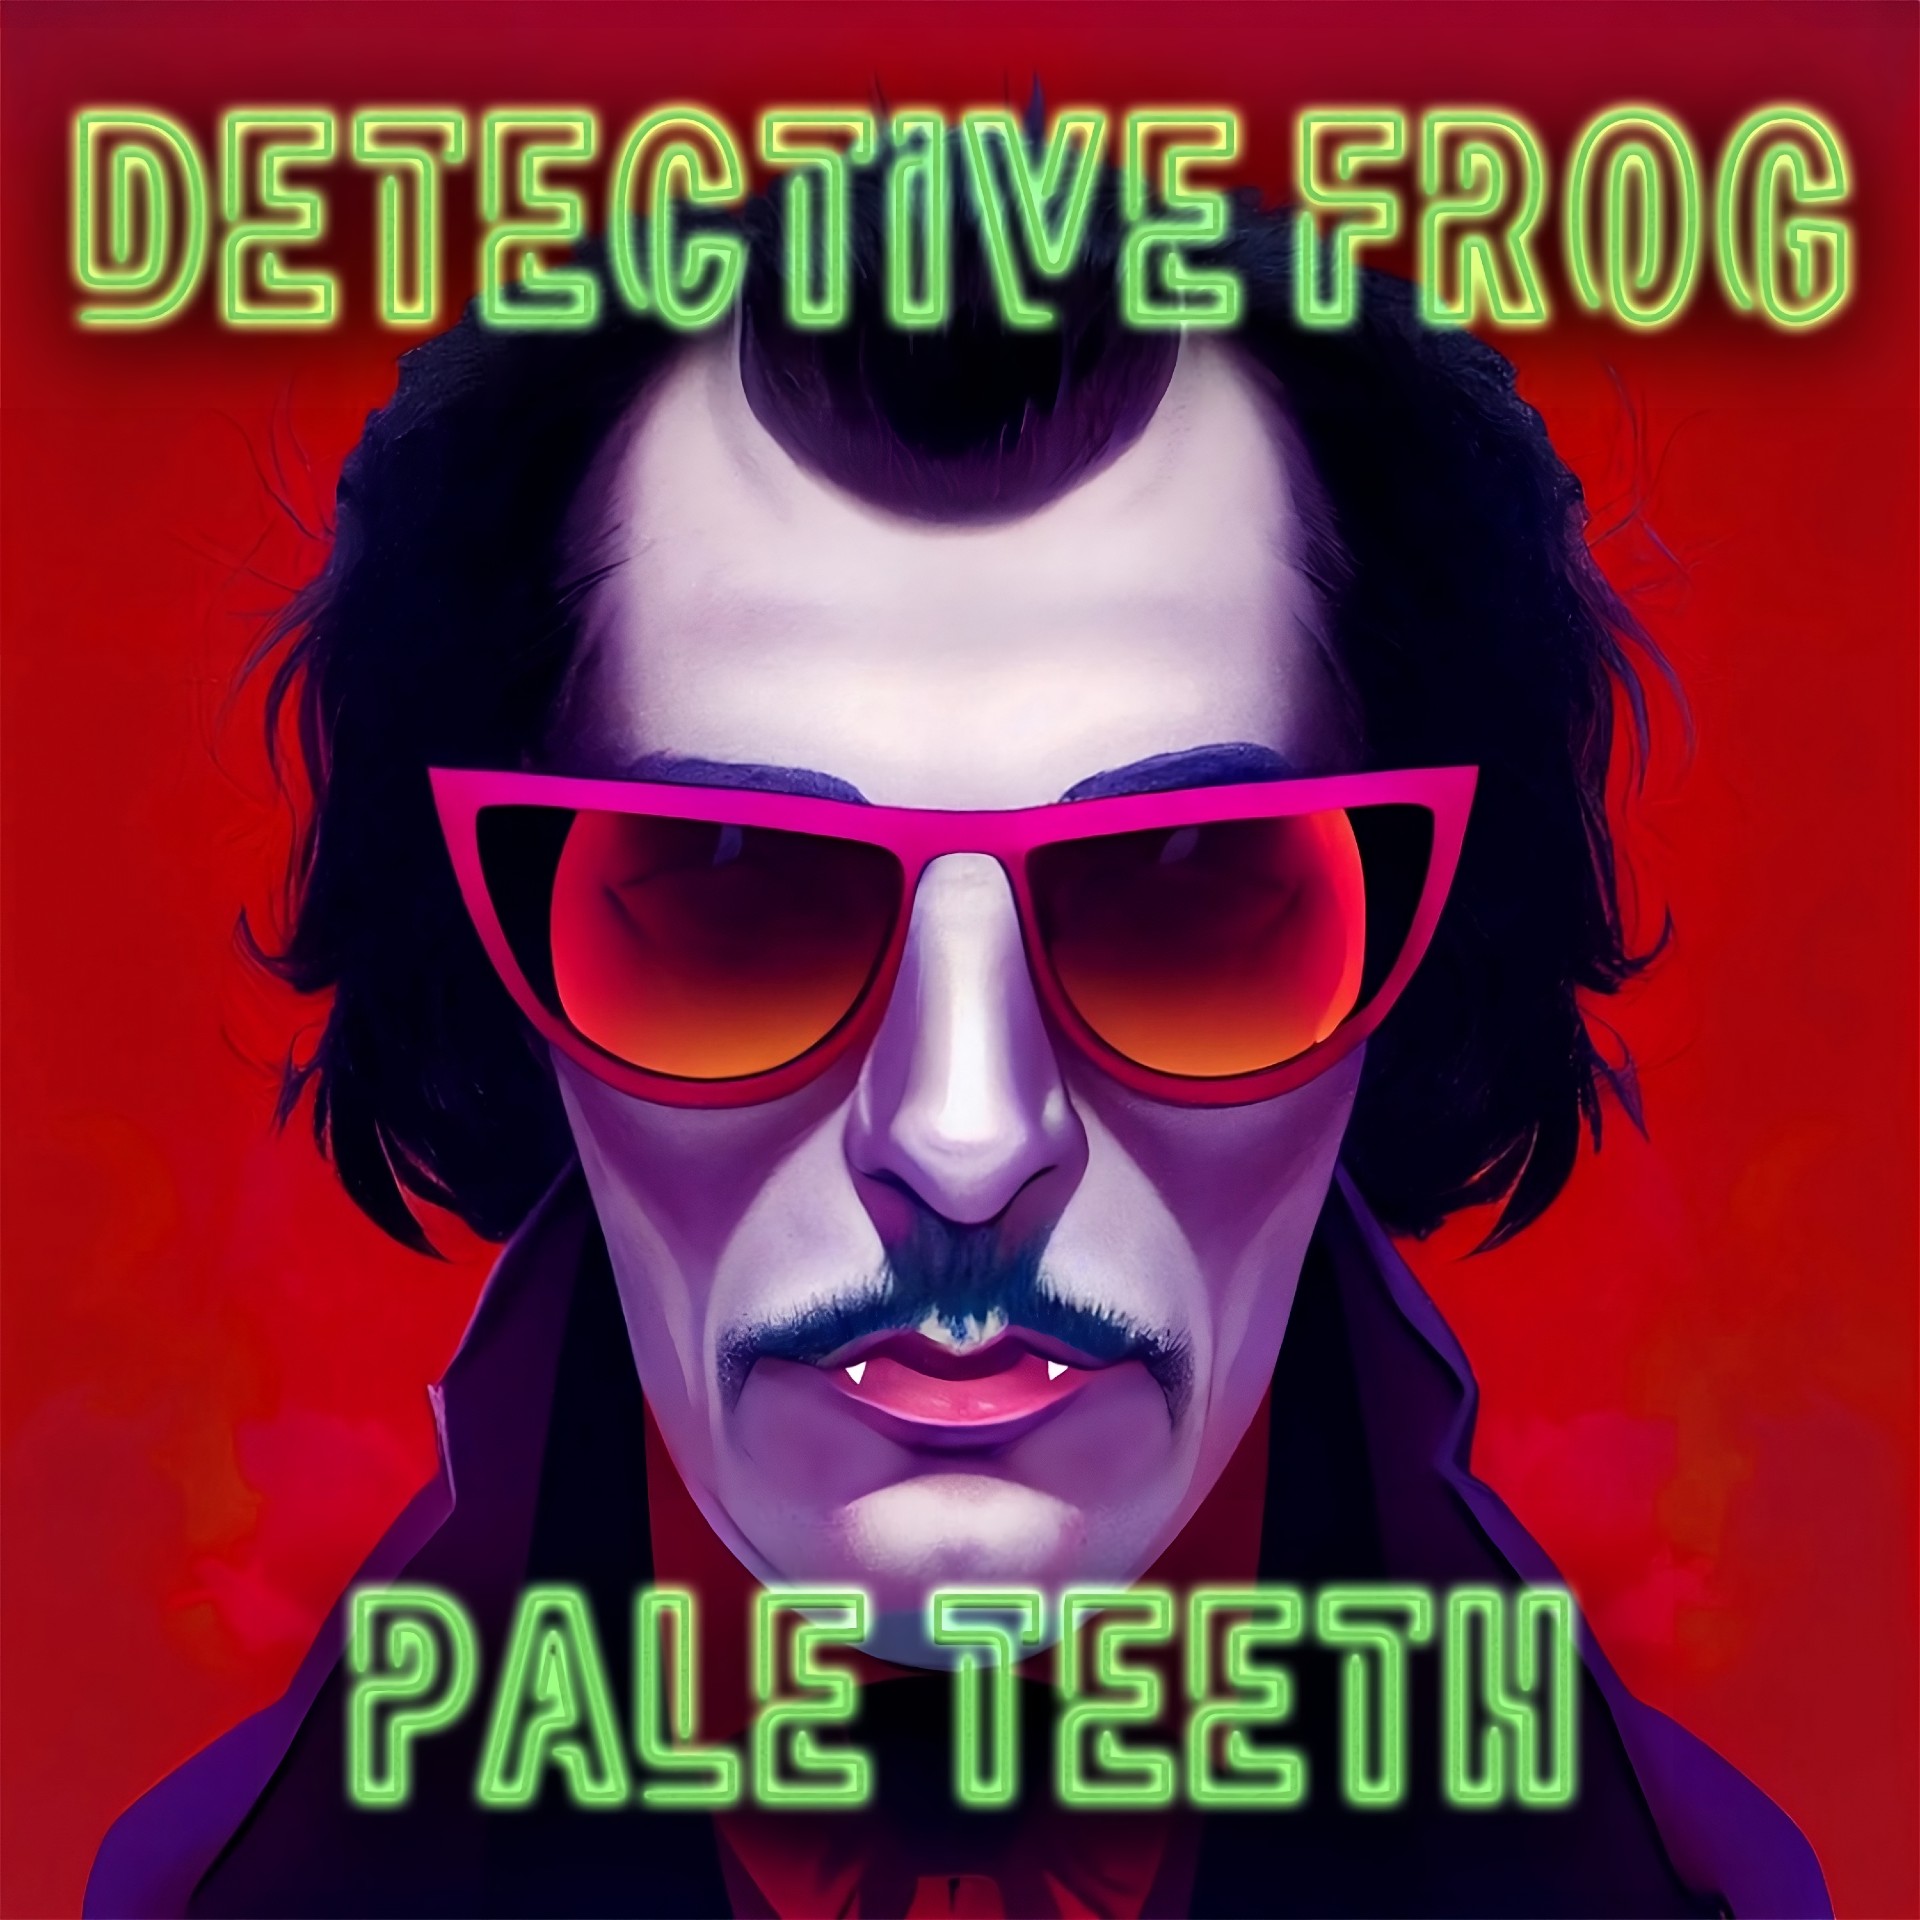 Detective Frog "Pale Teeth" single artwork